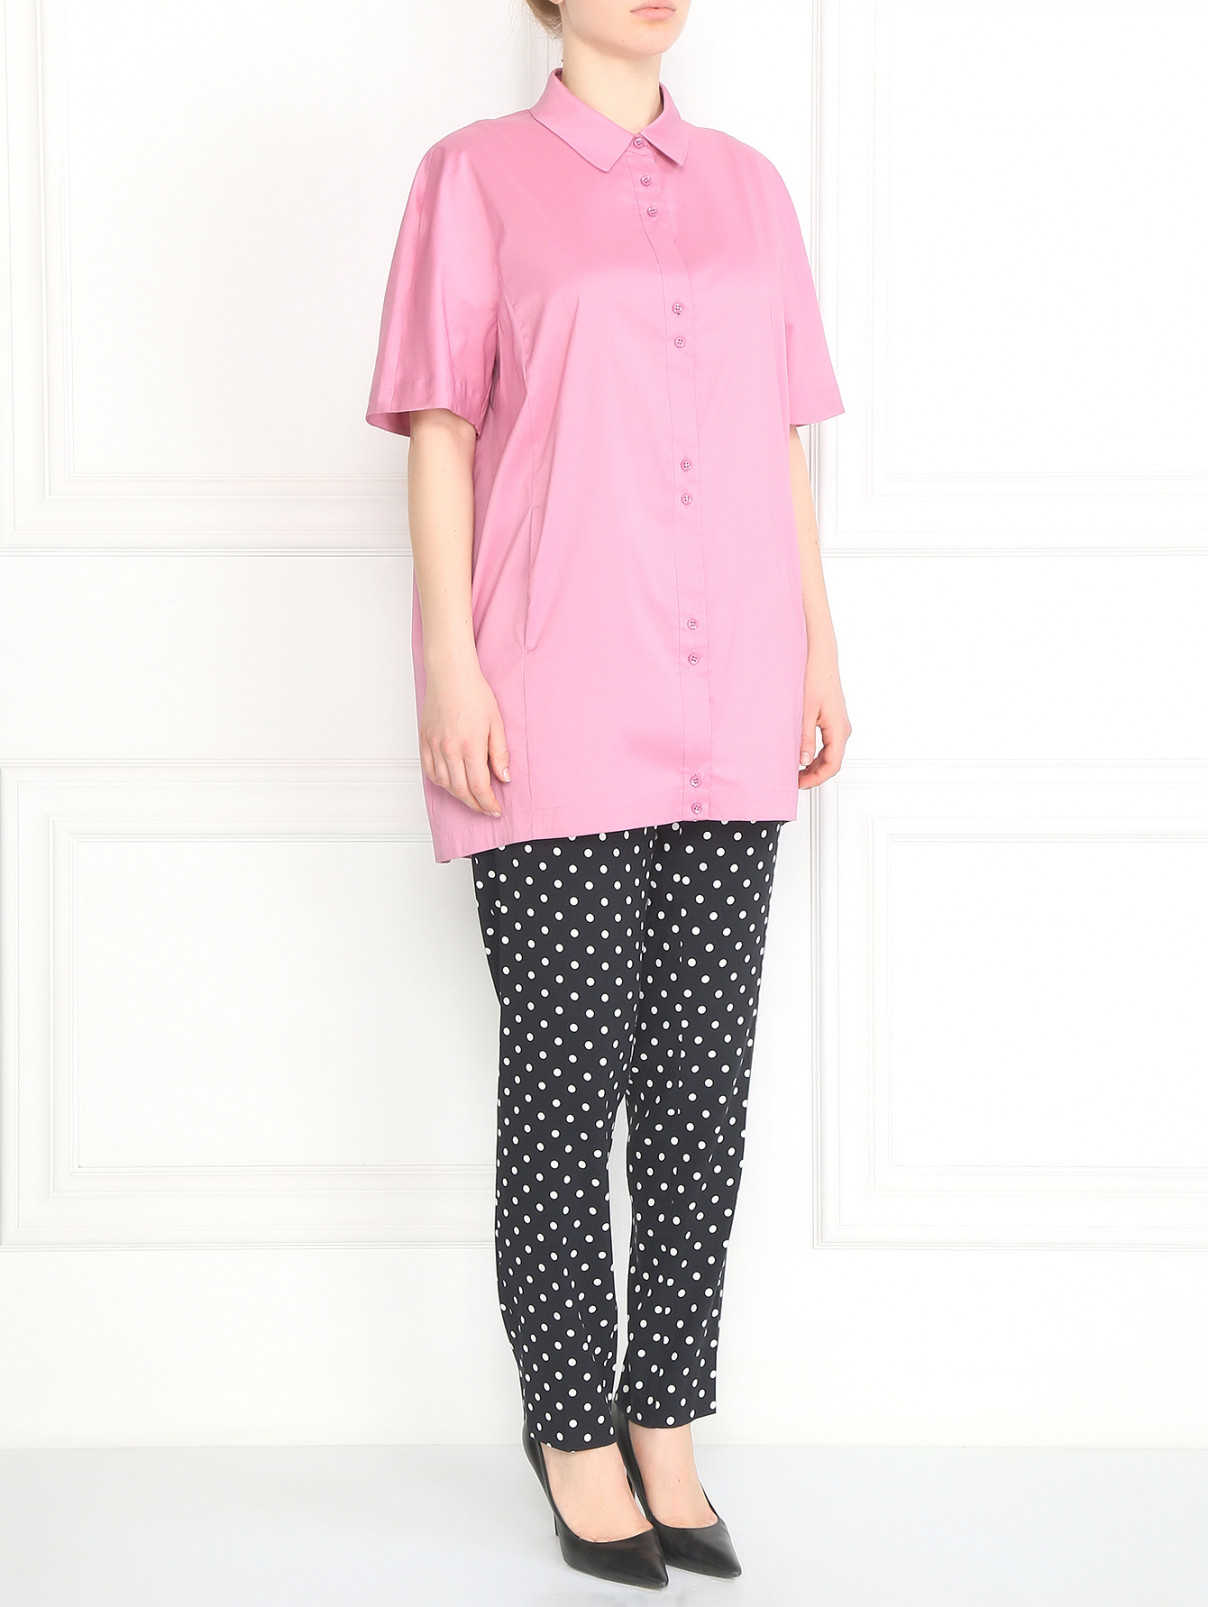 Рубашка из хлопка с короткими рукавами Marina Rinaldi  –  Модель Общий вид  – Цвет:  Розовый